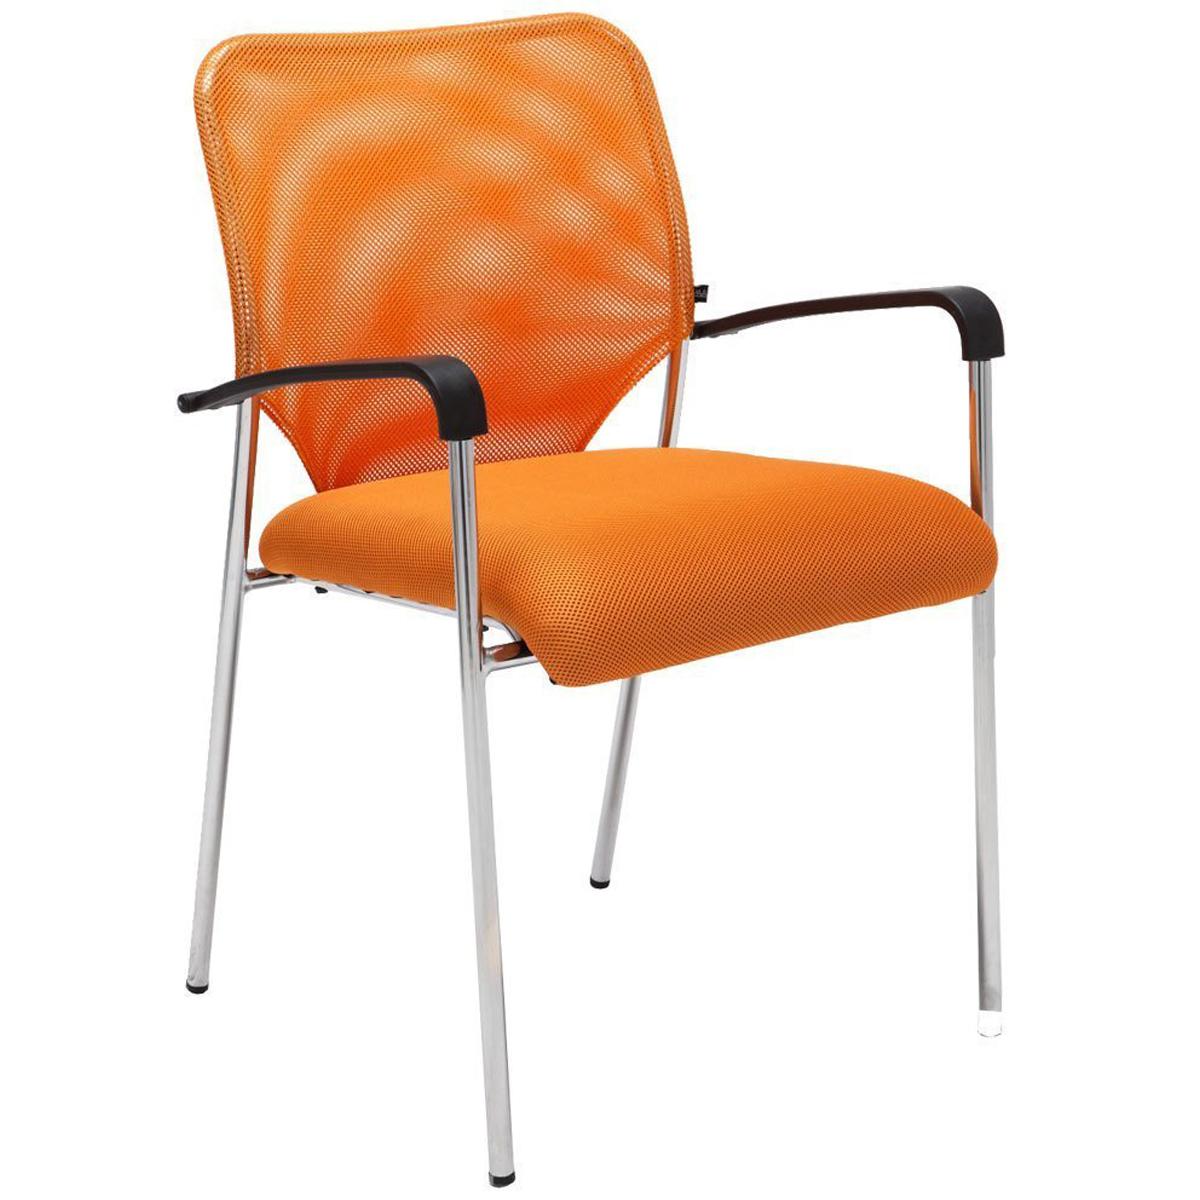 Konferenzstuhl JAMAIKA, robust und sehr bequem, atmungsaktiver Netzstoff, Farbe Orange